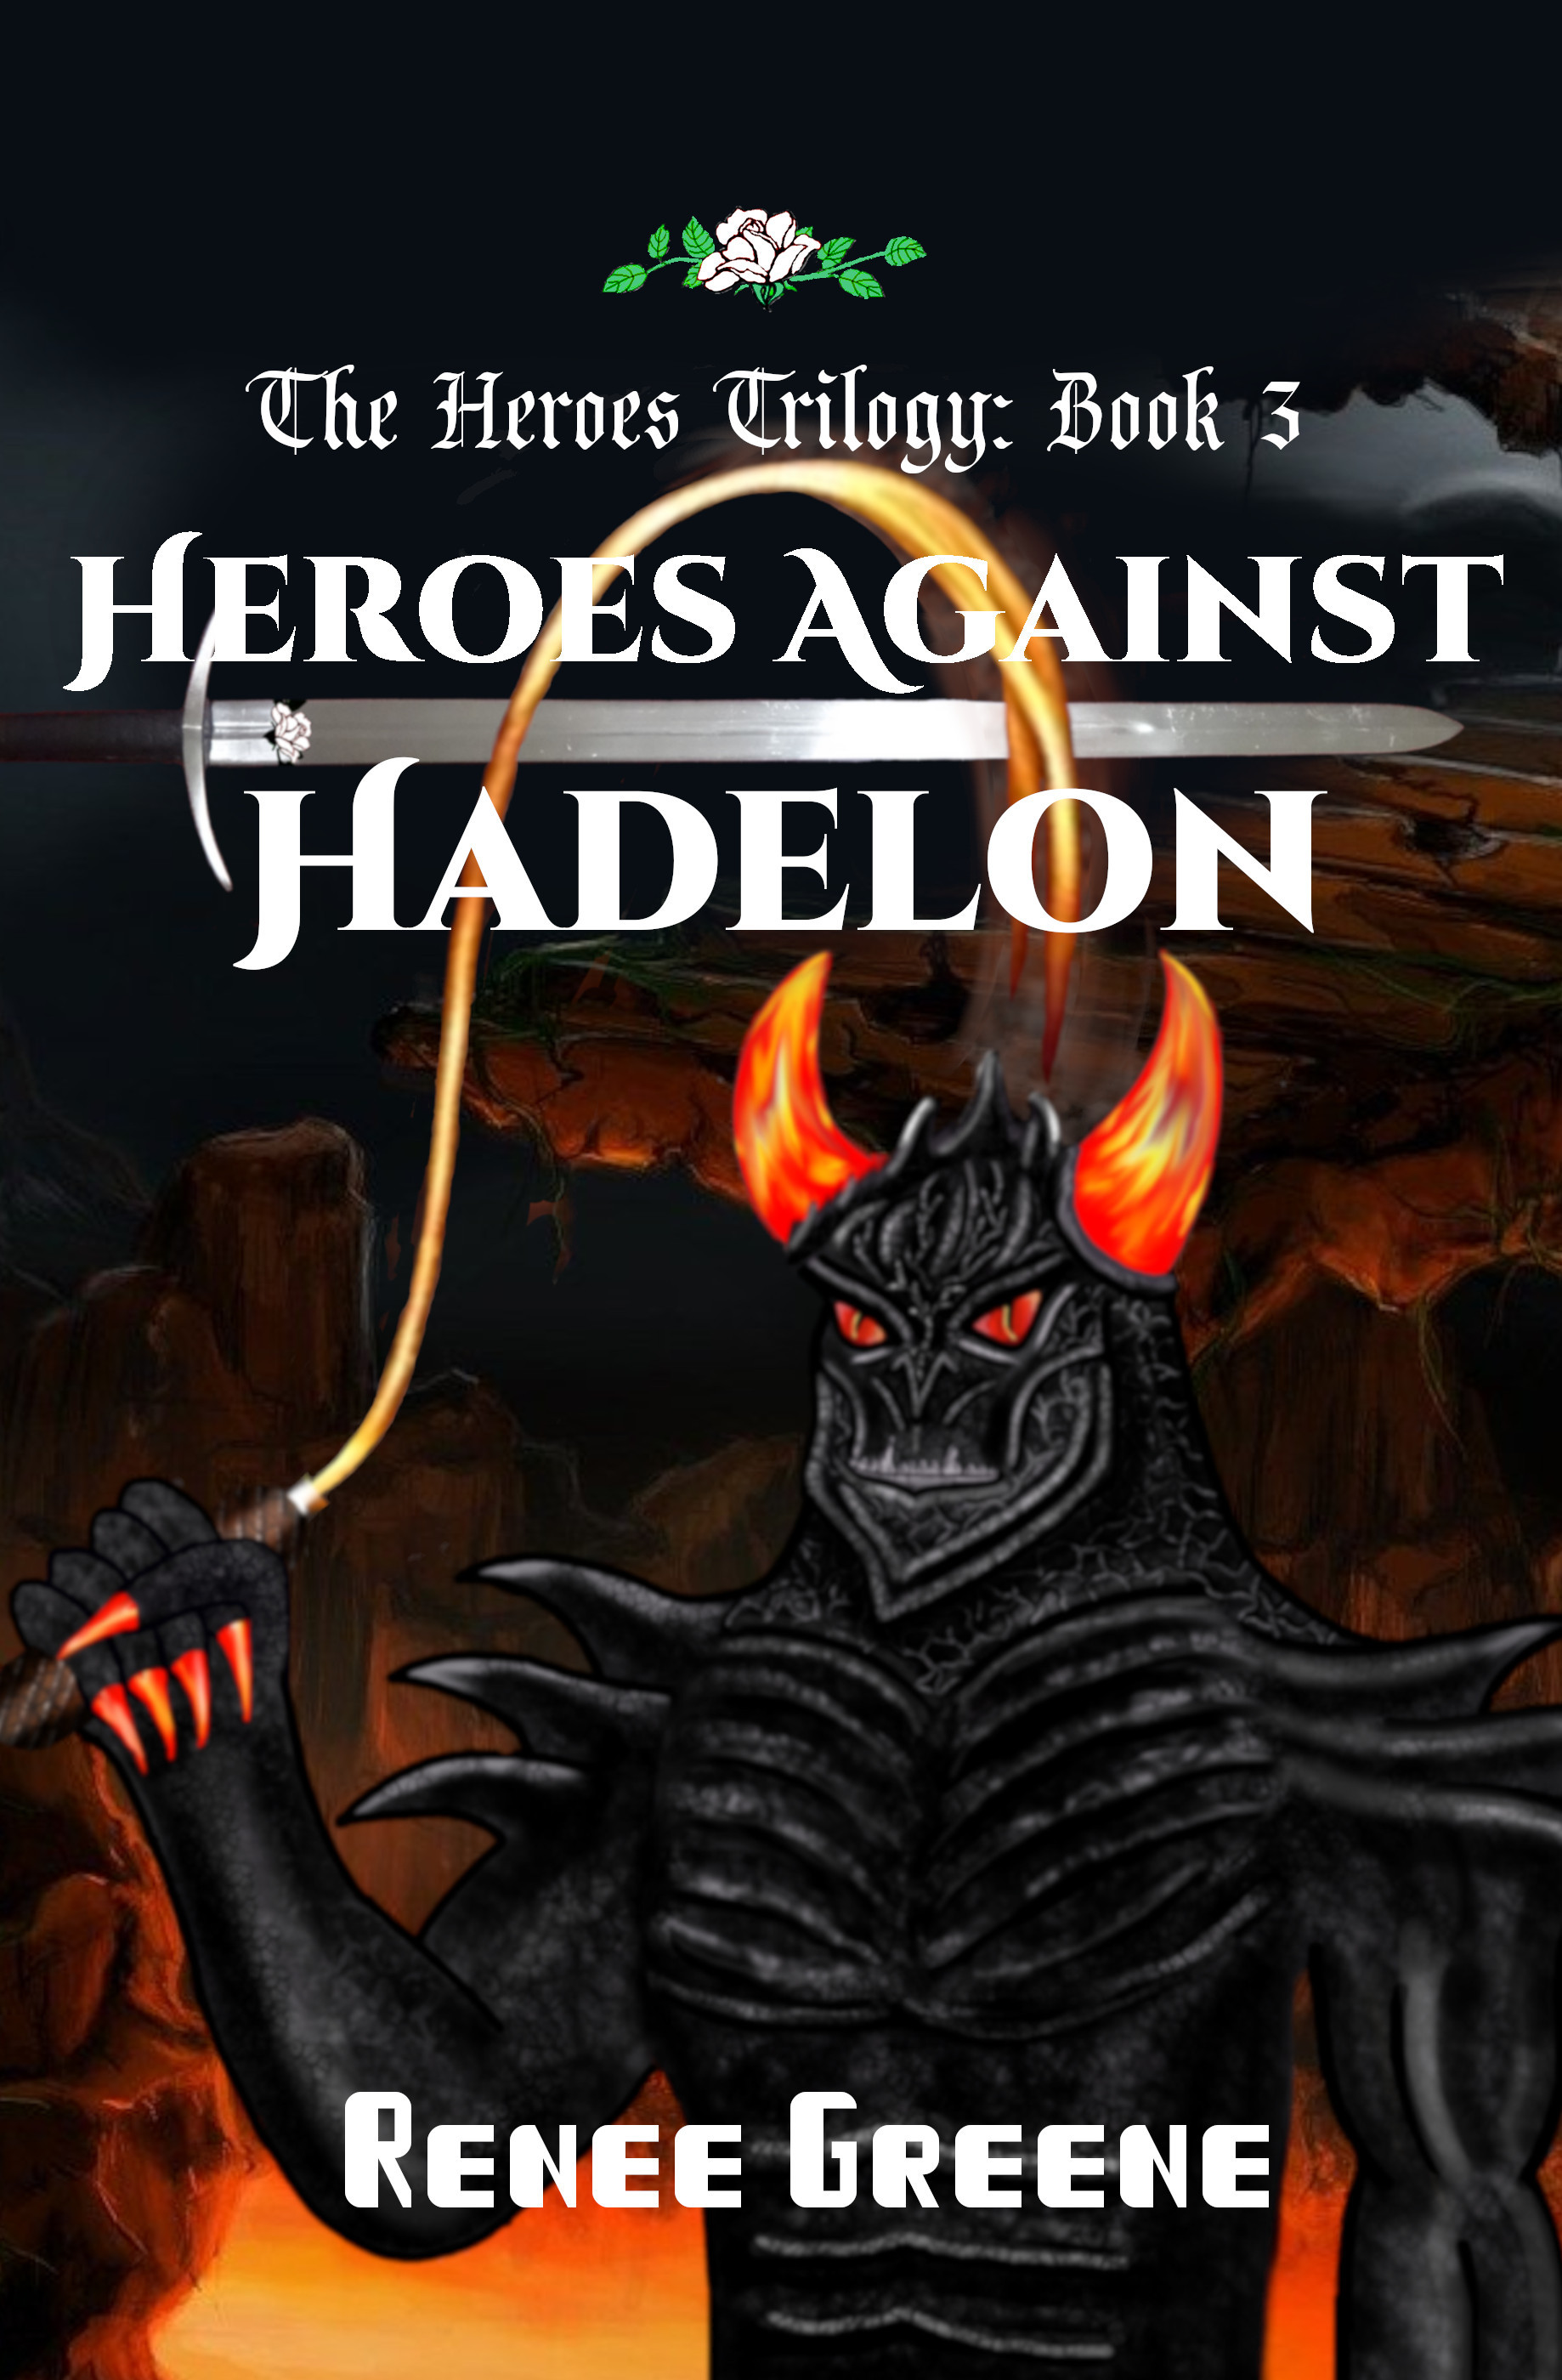 Heroes Trilogy Book 3: Heroes Against Hadelon